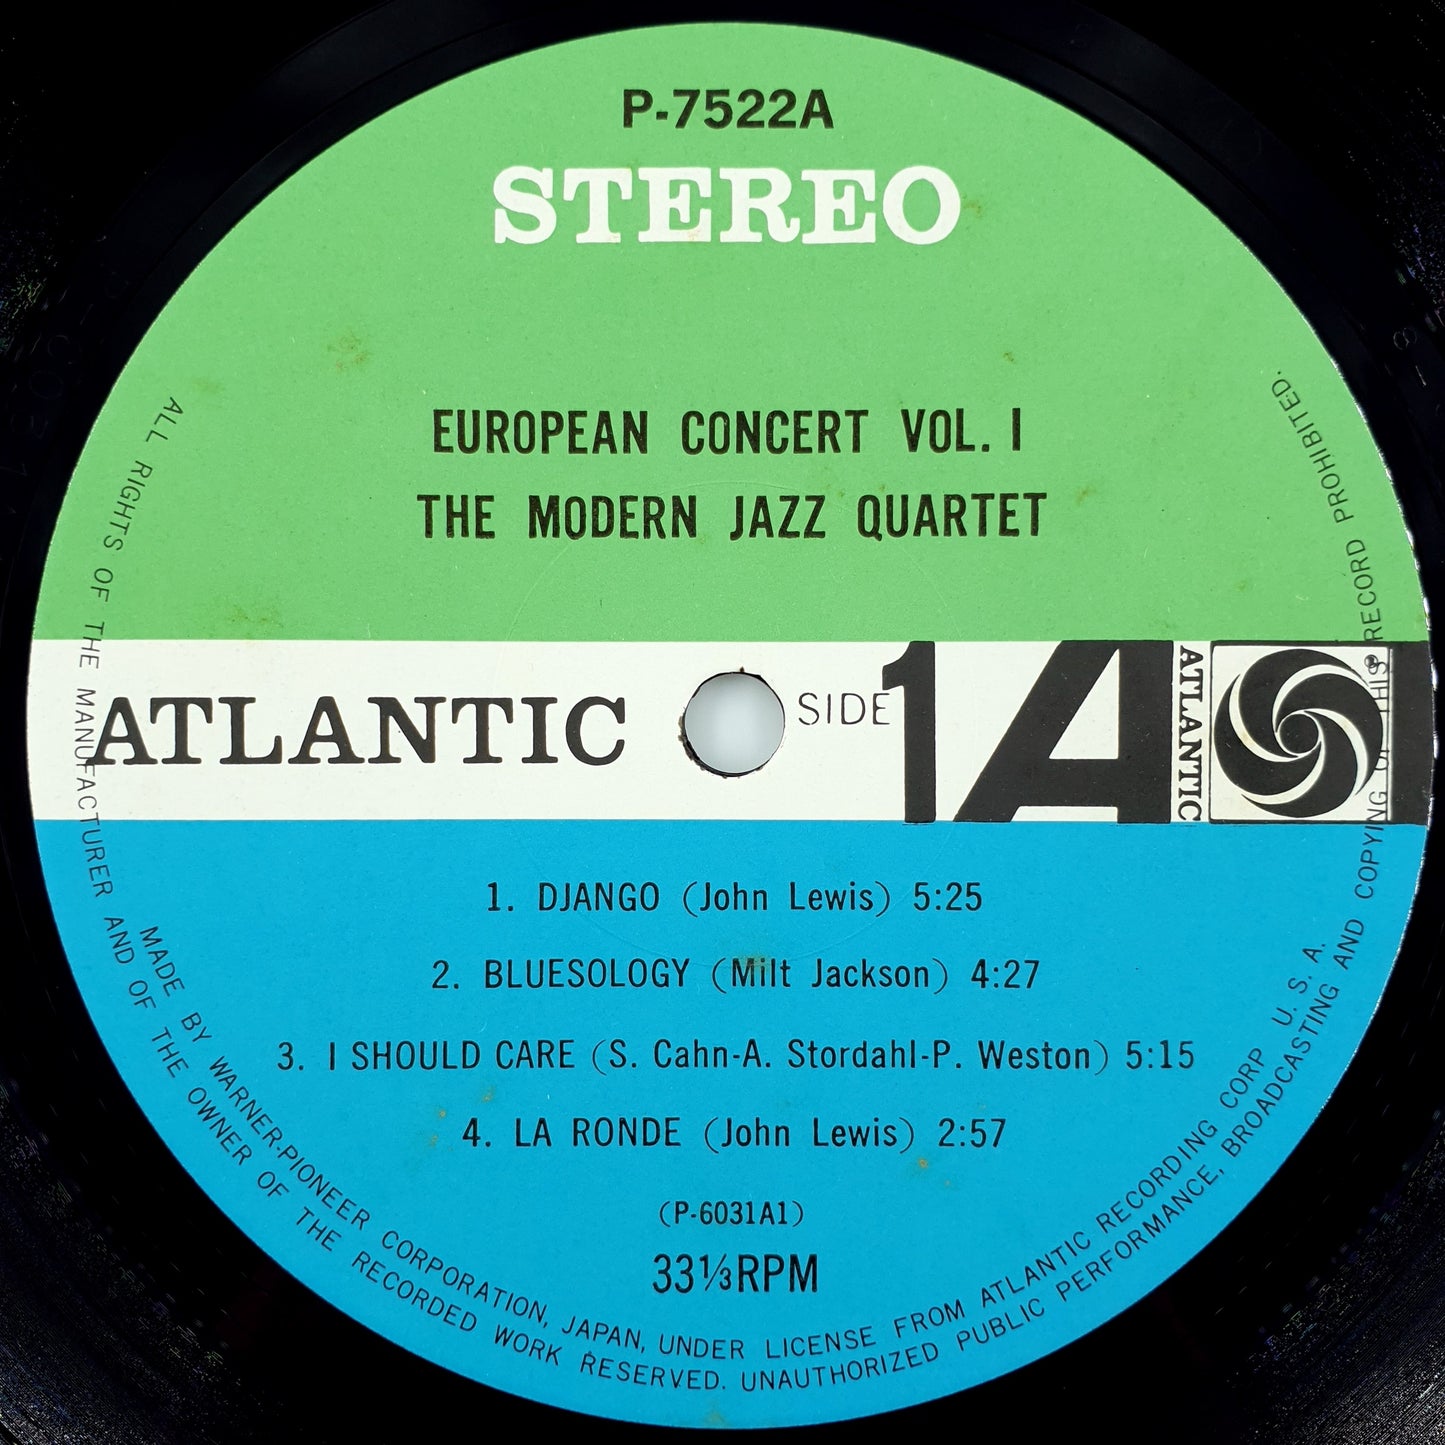 The Modern Jazz Quartet – European Concert: Volume One